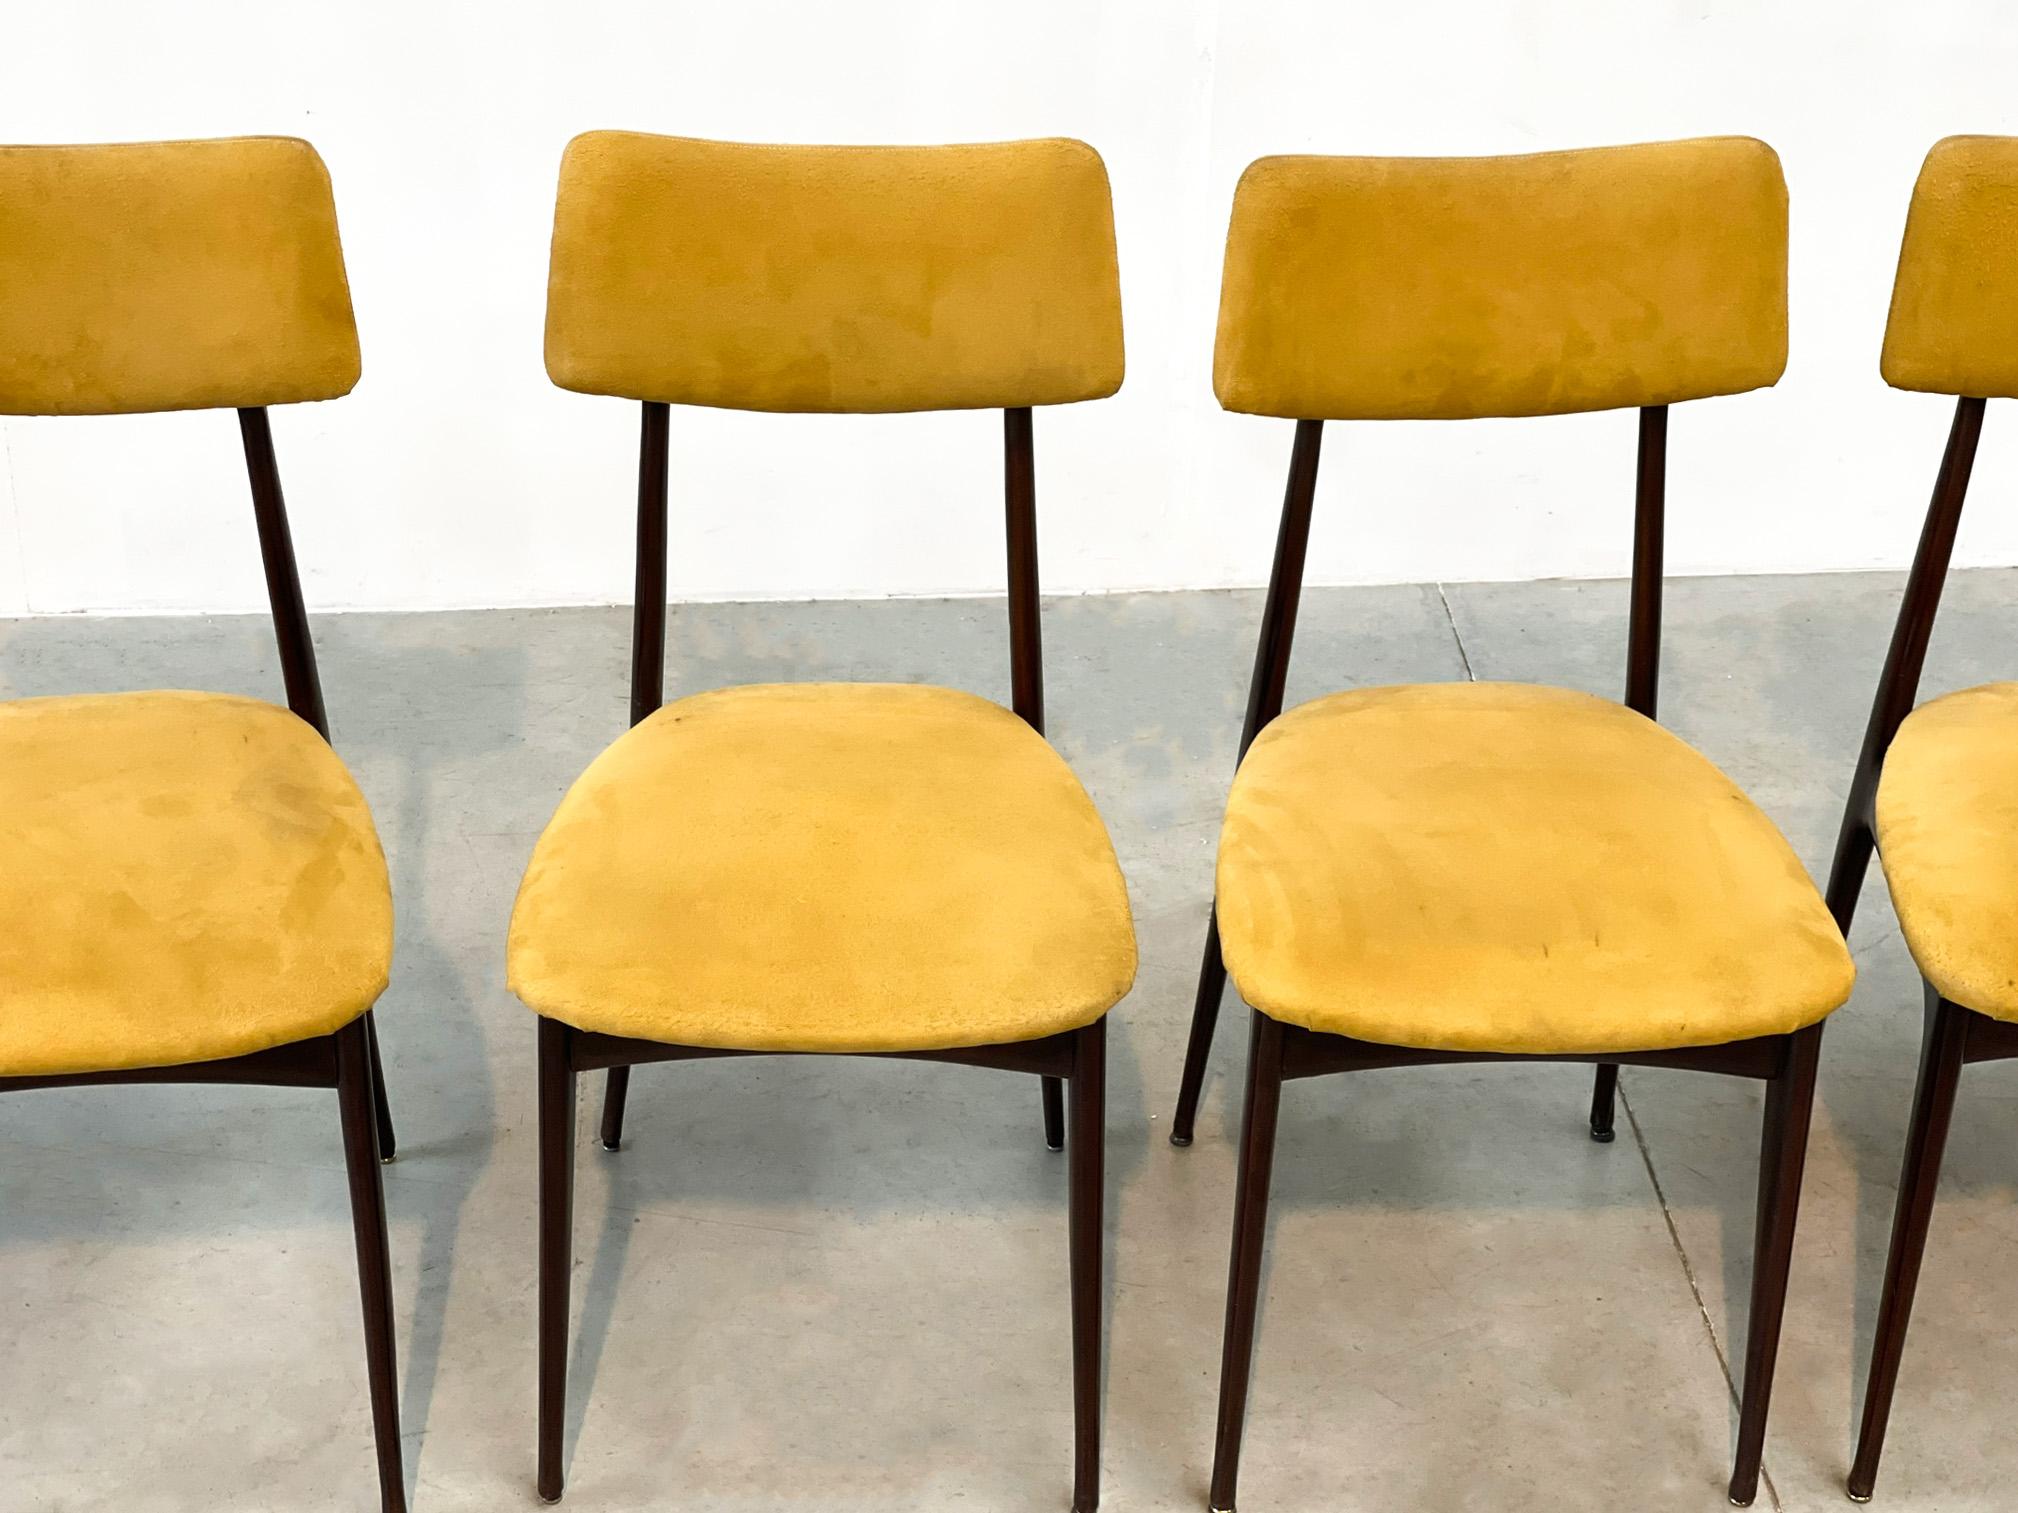 Elegante italienische Esszimmerstühle aus der Mitte des Jahrhunderts mit Palisanderholzrahmen und gelber Wildlederpolsterung.

Die Stühle sind wunderschön und mit echter Handwerkskunst gefertigt

Guter Zustand

1950er Jahre -